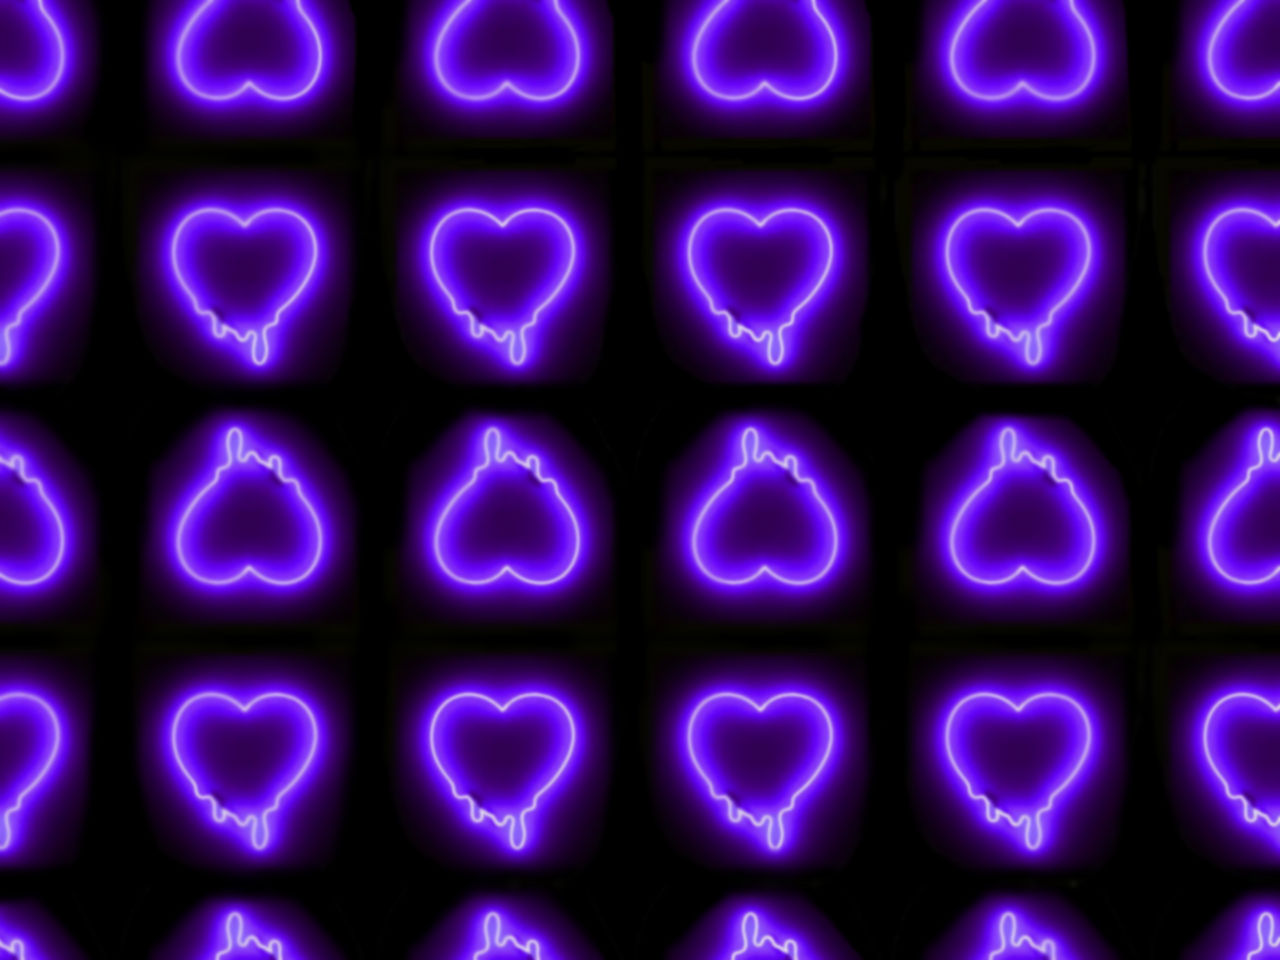 Bạn yêu thích màu tím neon và muốn có một thiết kế nền độc đáo? Hãy đến xem nền trái tim màu tím neon này - một món quà hoàn hảo cho các tín đồ của màu sắc tươi sáng và bắt mắt!